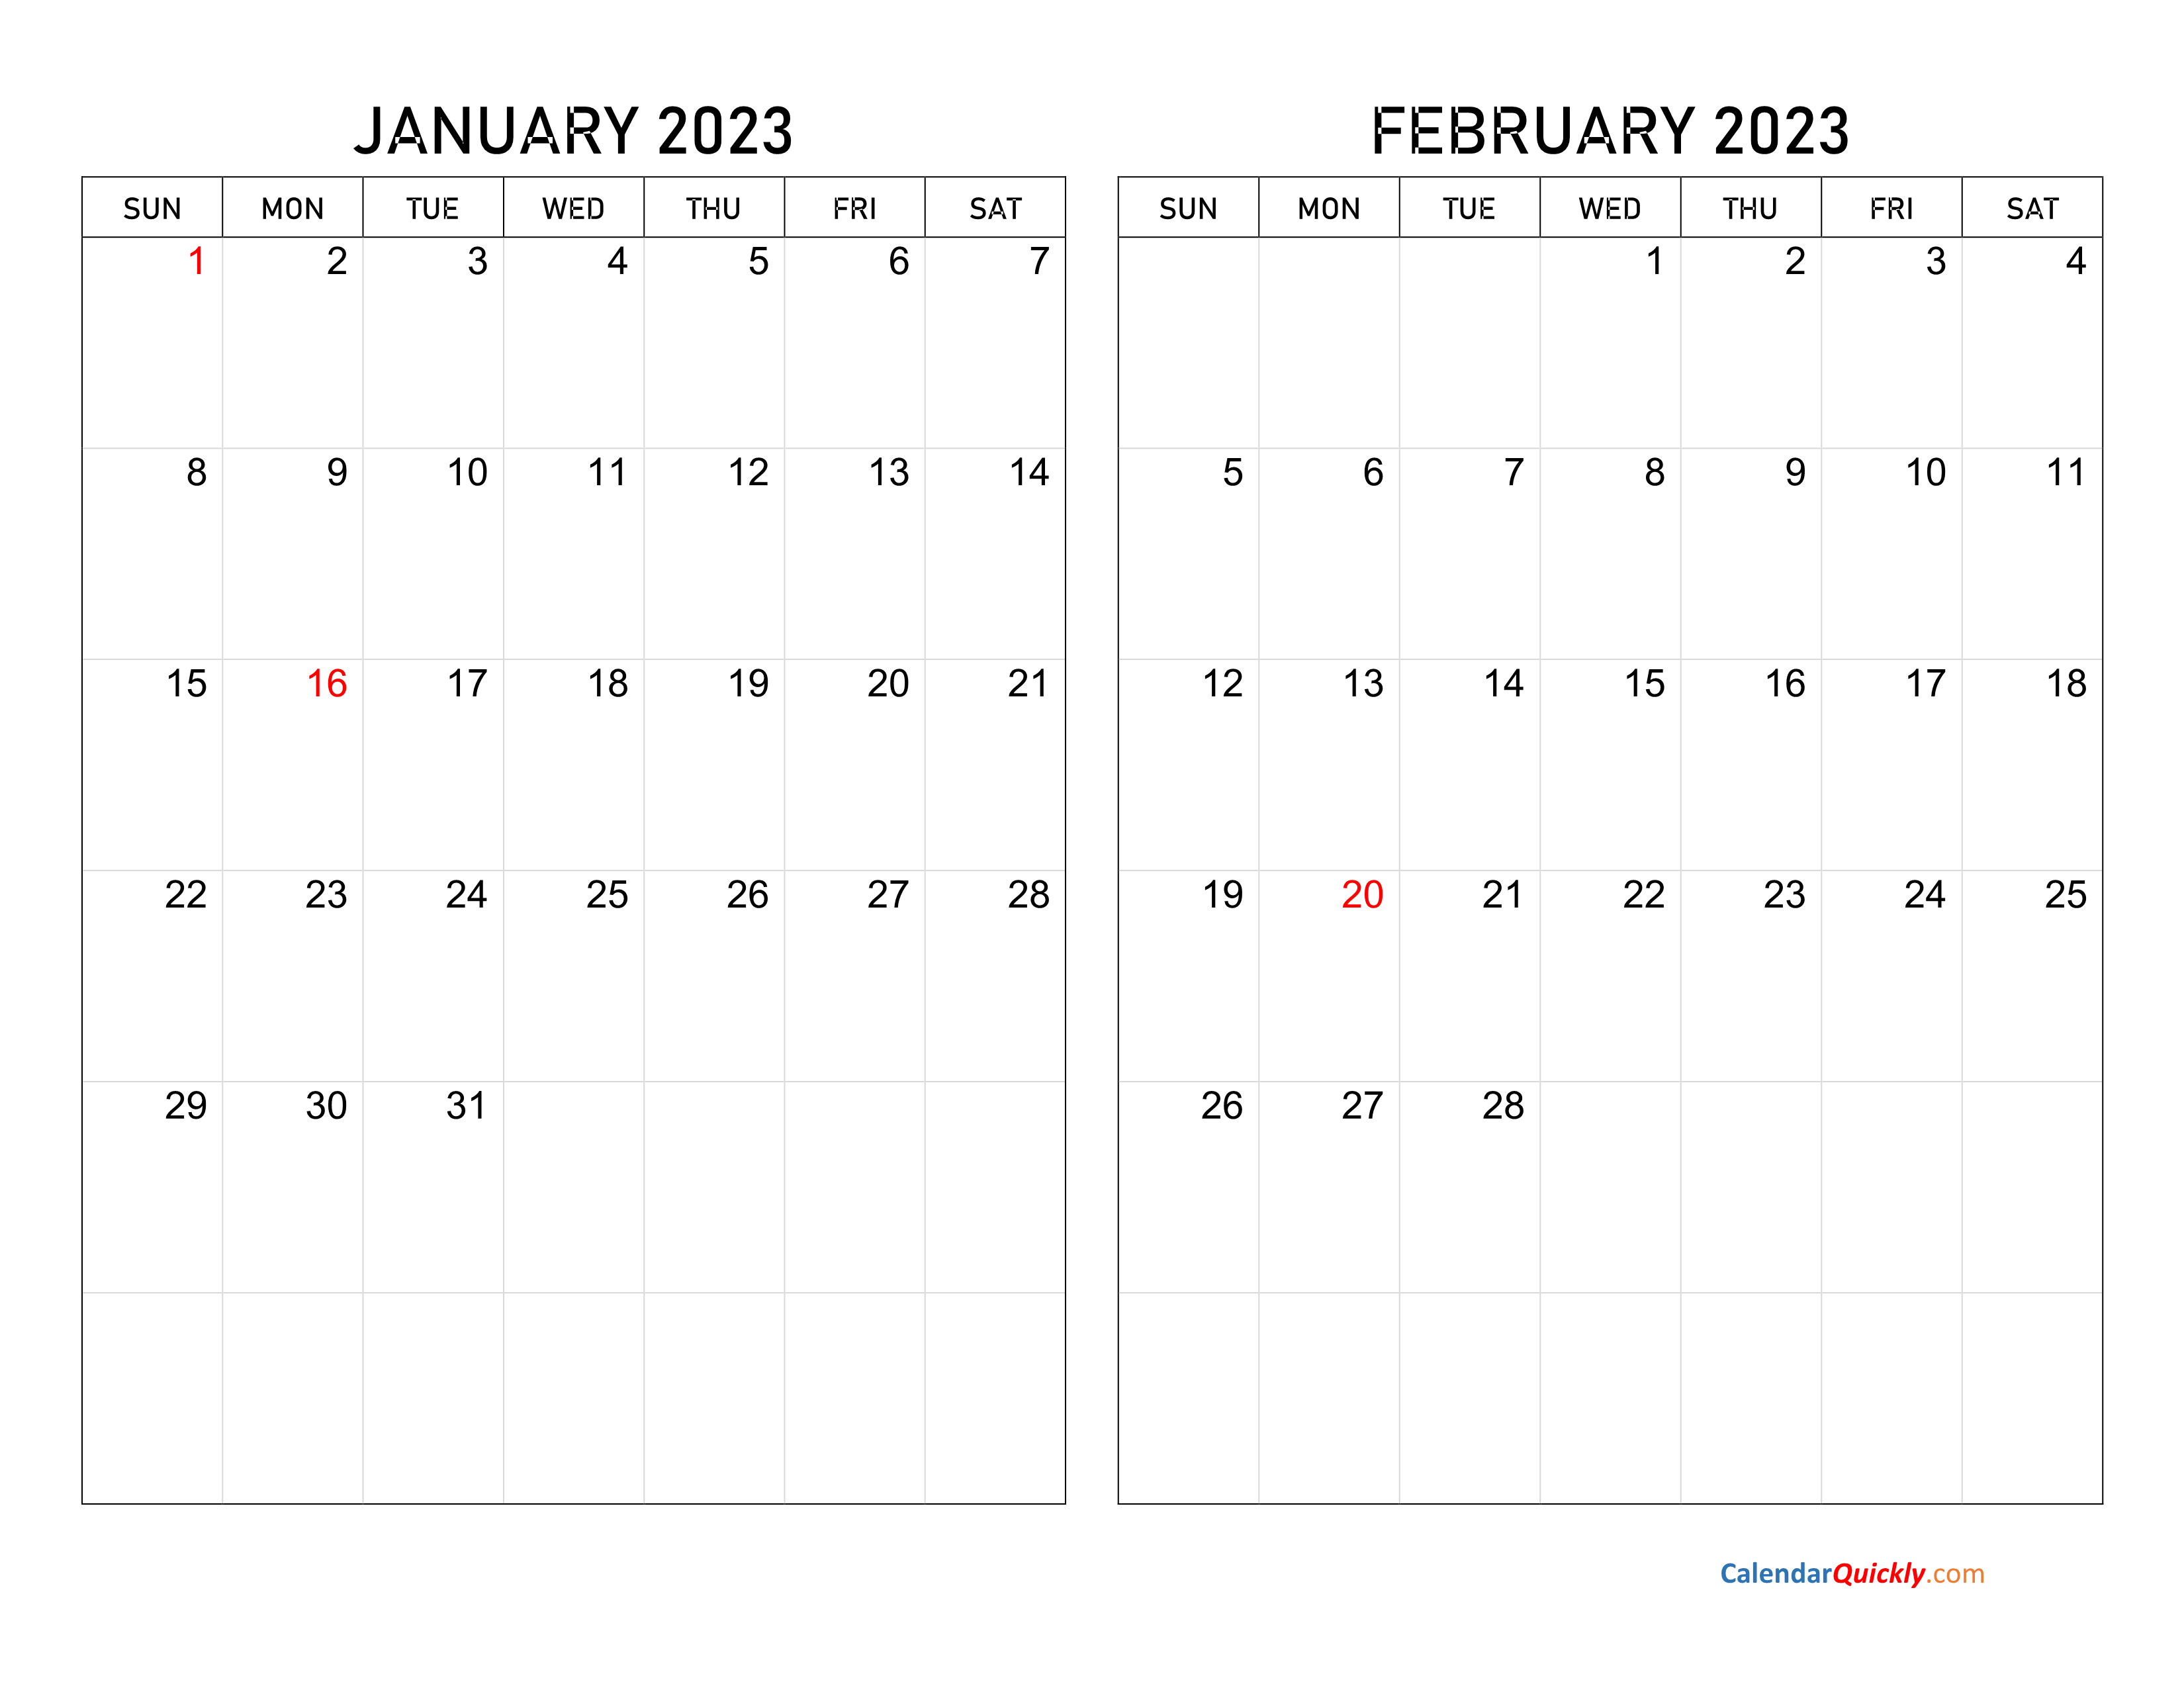 January and February 2023 Calendar Calendar Quickly